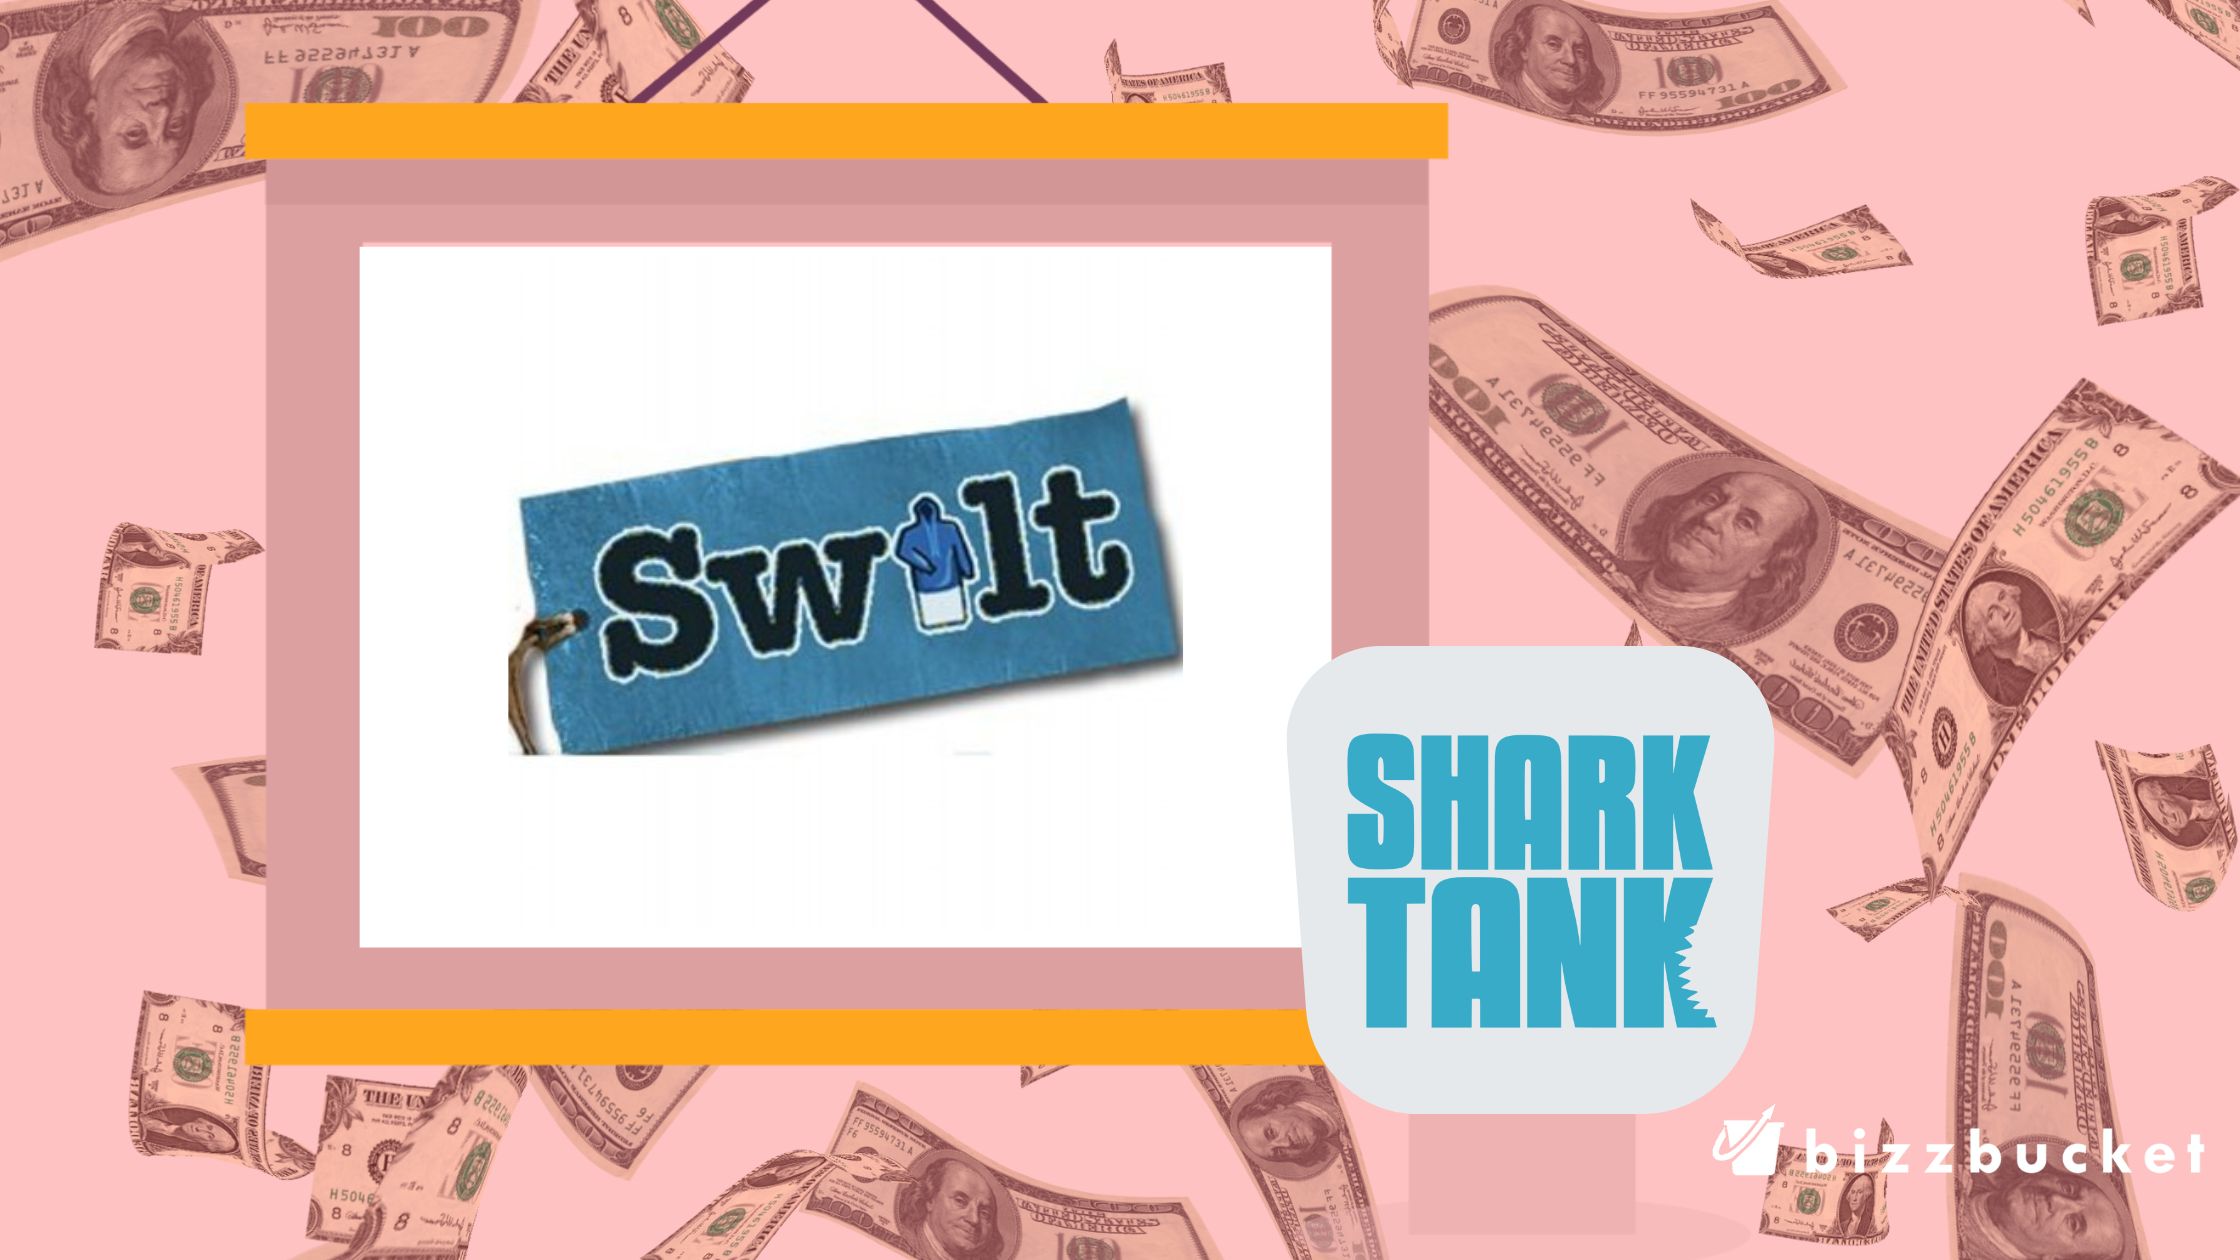 Swilt shark tank update